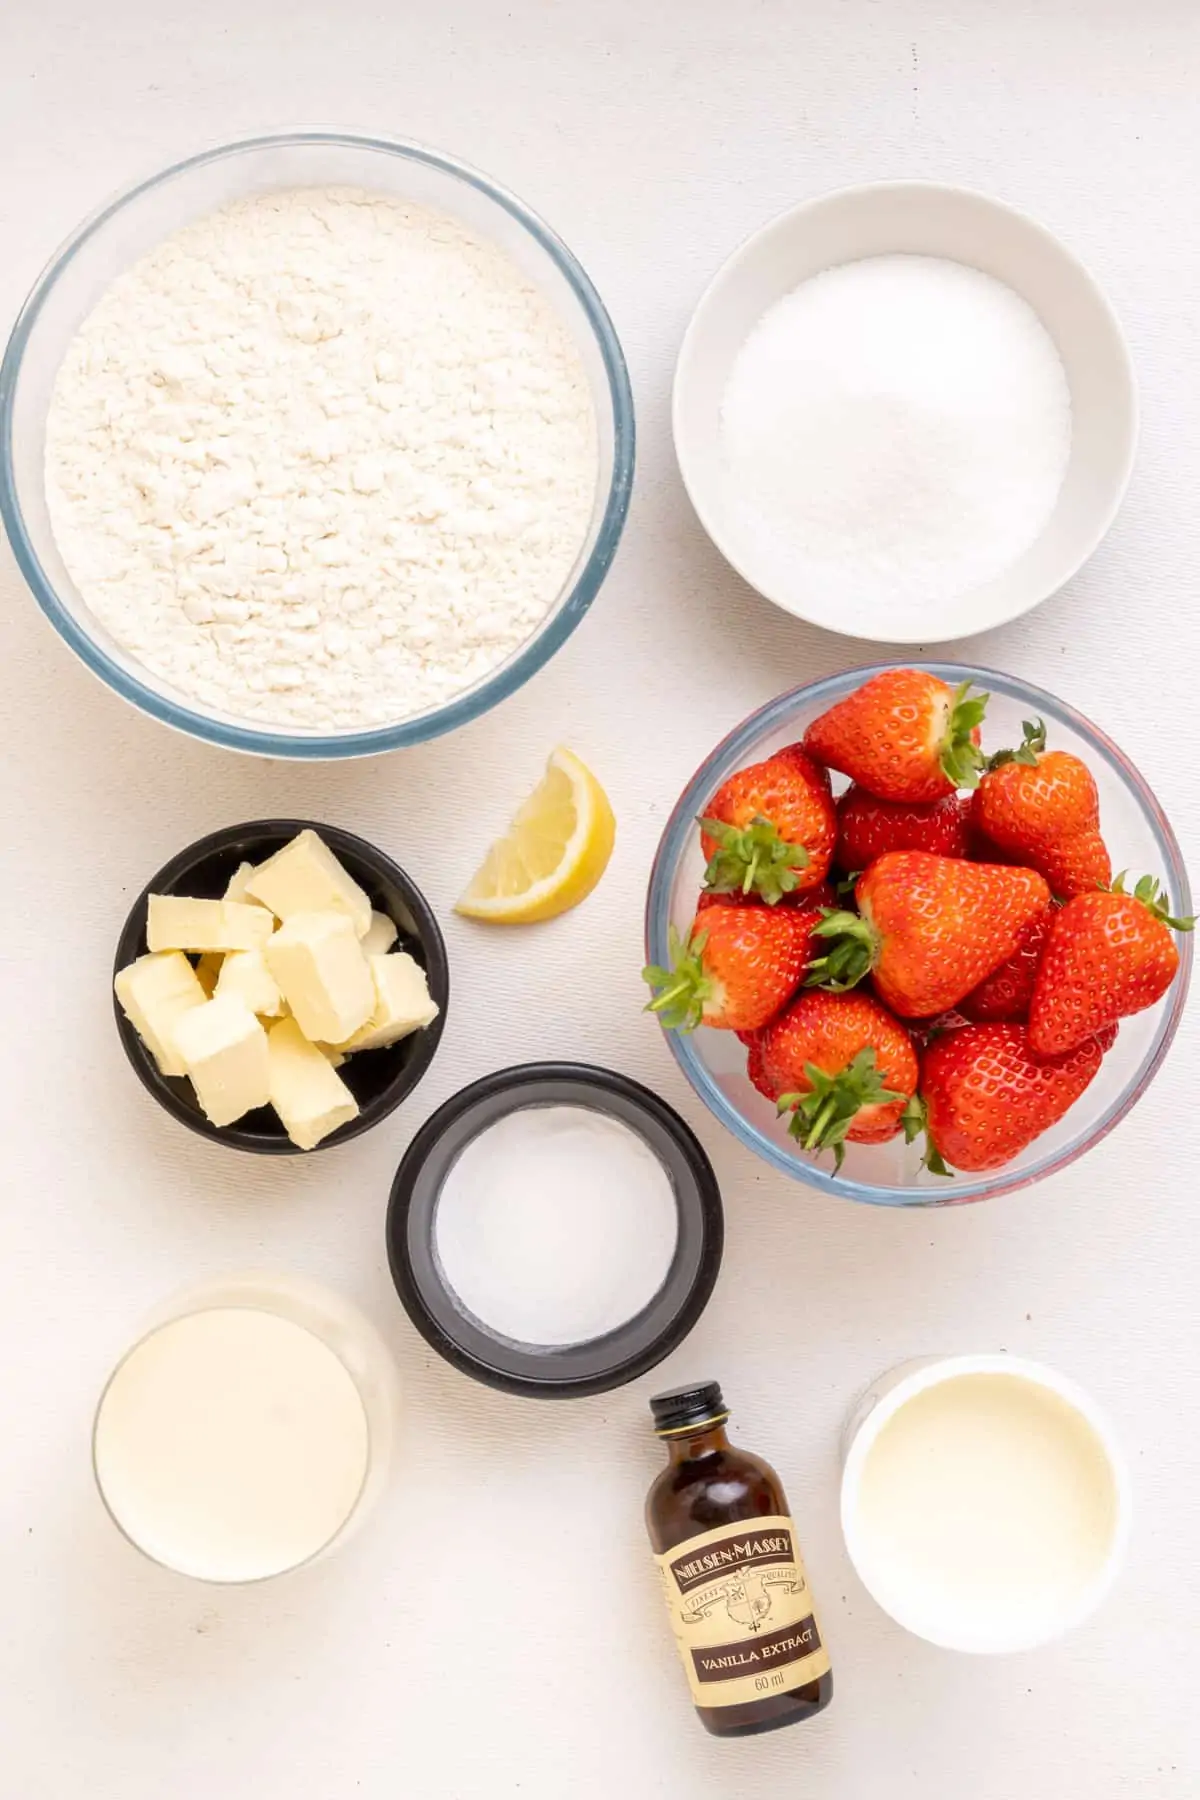 Τα συστατικά για το vegan κέικ φράουλας: Φράουλες, άσπρο αλεύρι, ζάχαρη, μπέικιν πάουντερ, κύβους βέγκαν βούτυρο, γάλα σόγιας, vegan σαντιγί, εκχύλισμα βανίλιας και ένα μικρό κομμάτι λεμόνι.